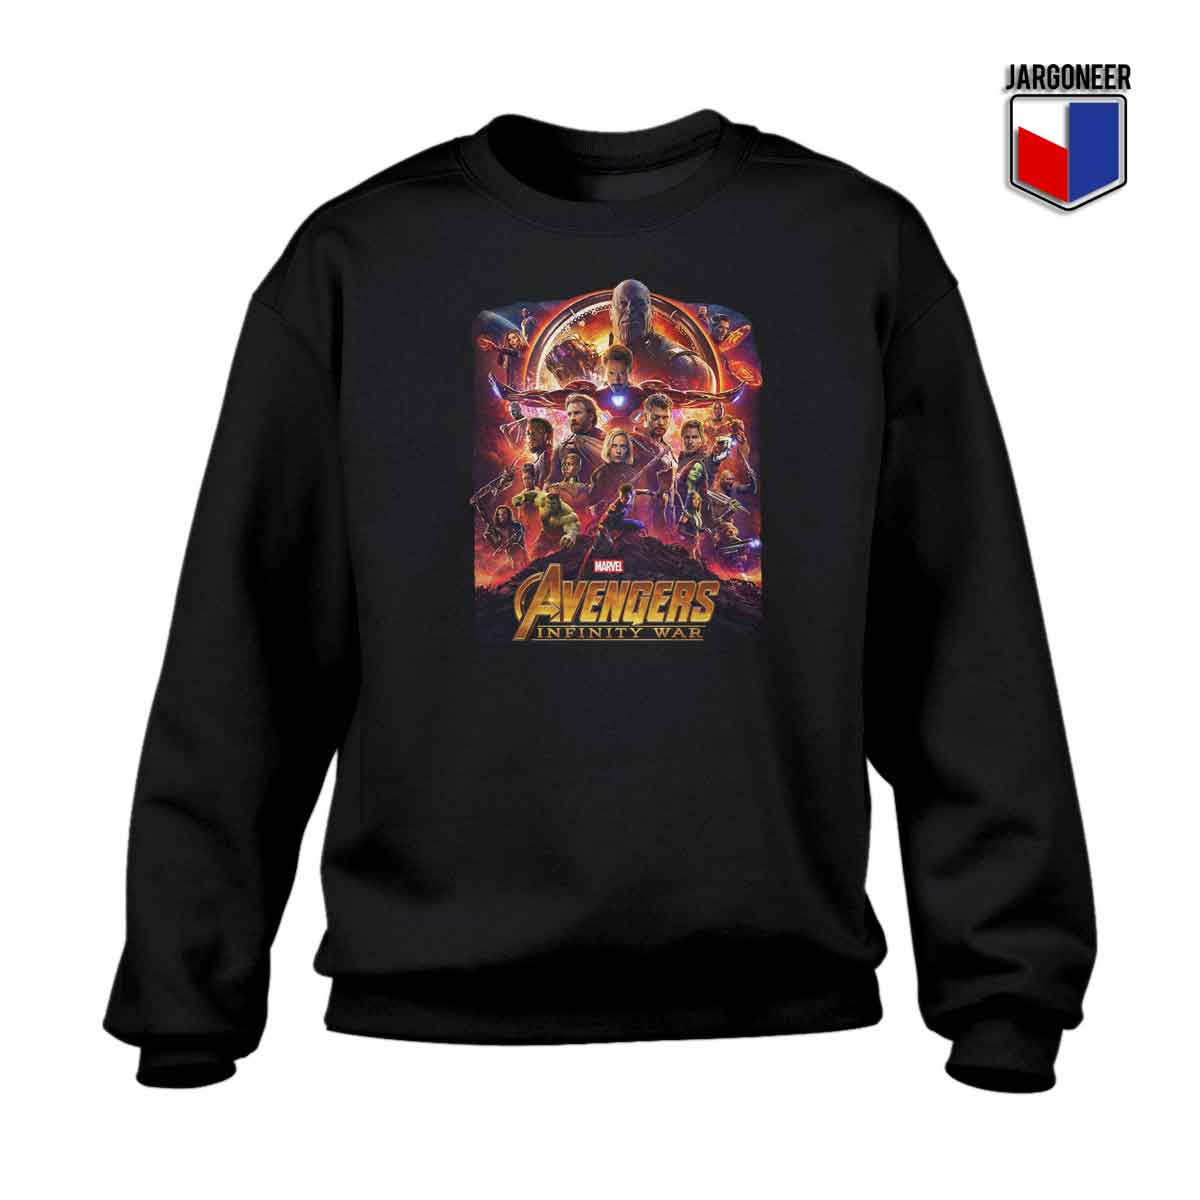 Avengers Infinity War 1 - Shop Unique Graphic Cool Shirt Designs